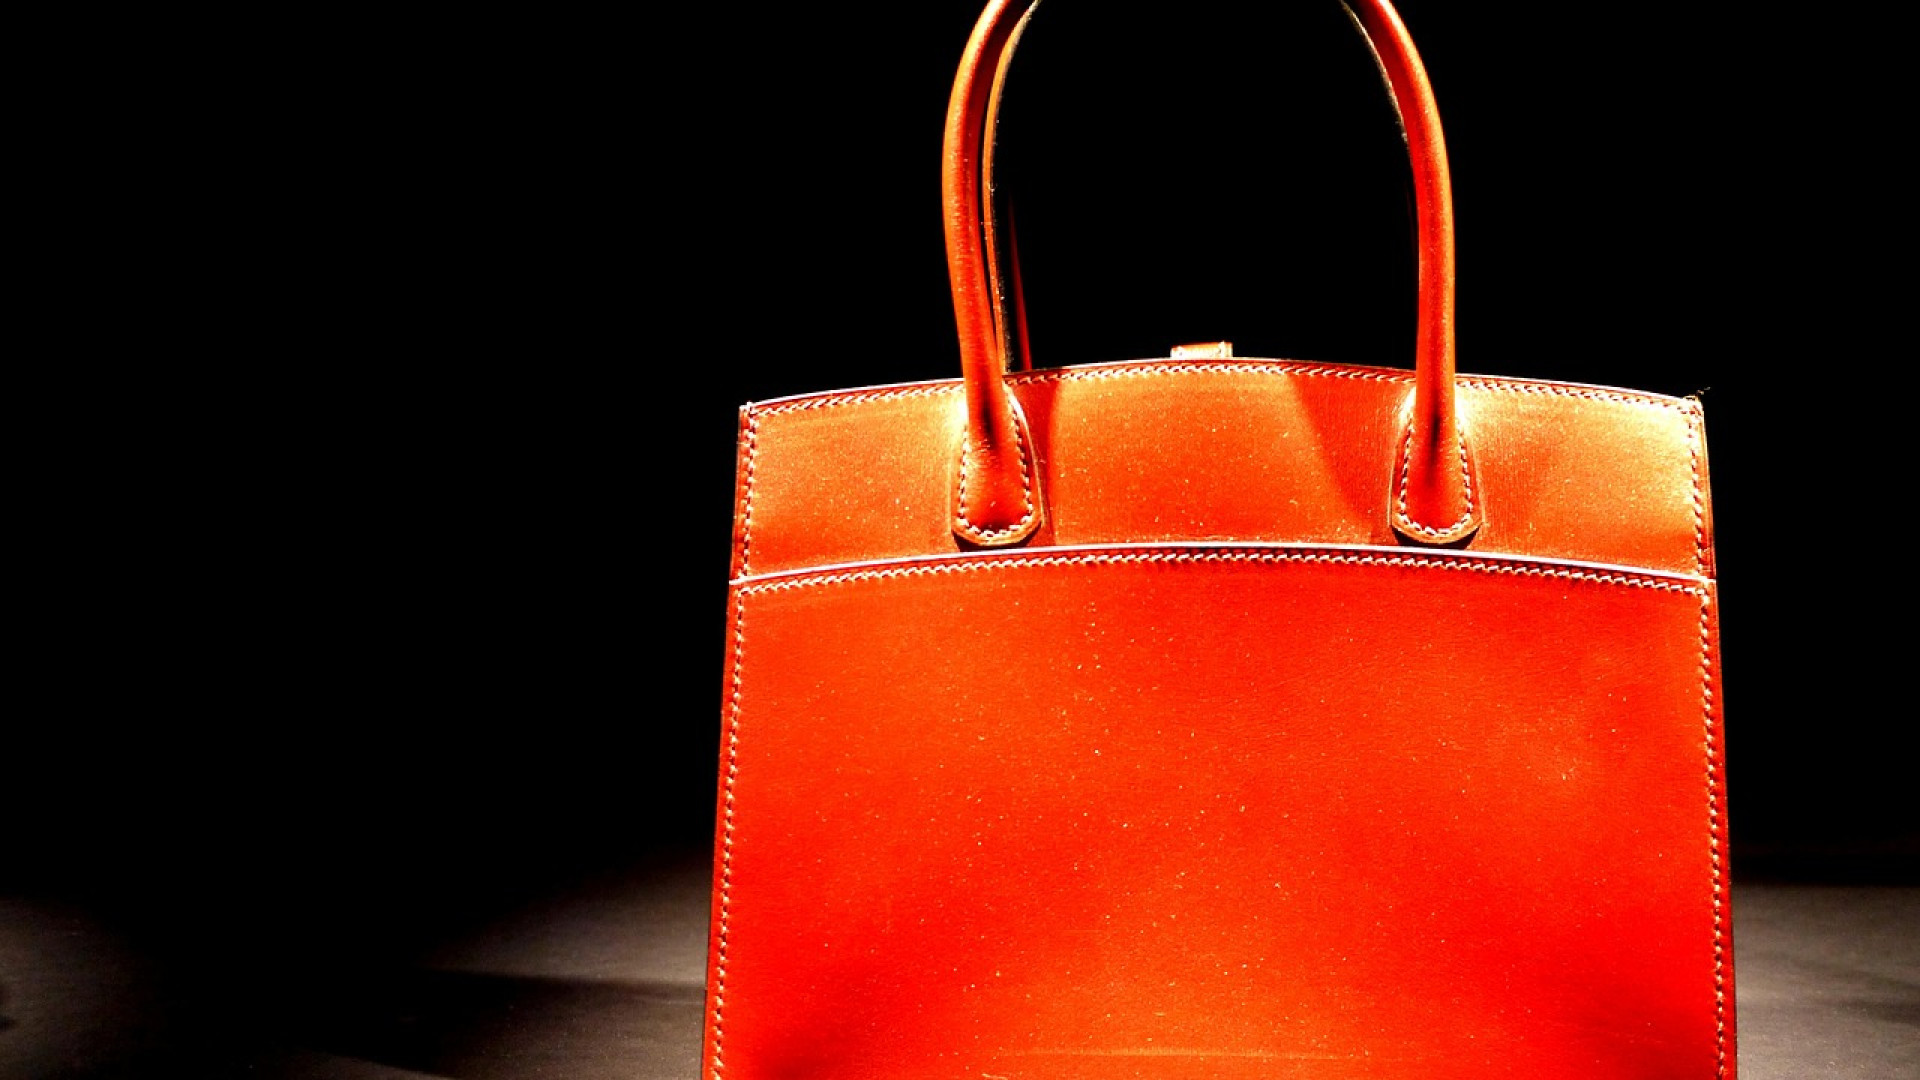 Découvrez comment un sac de luxe de seconde main peut révéler votre originalité